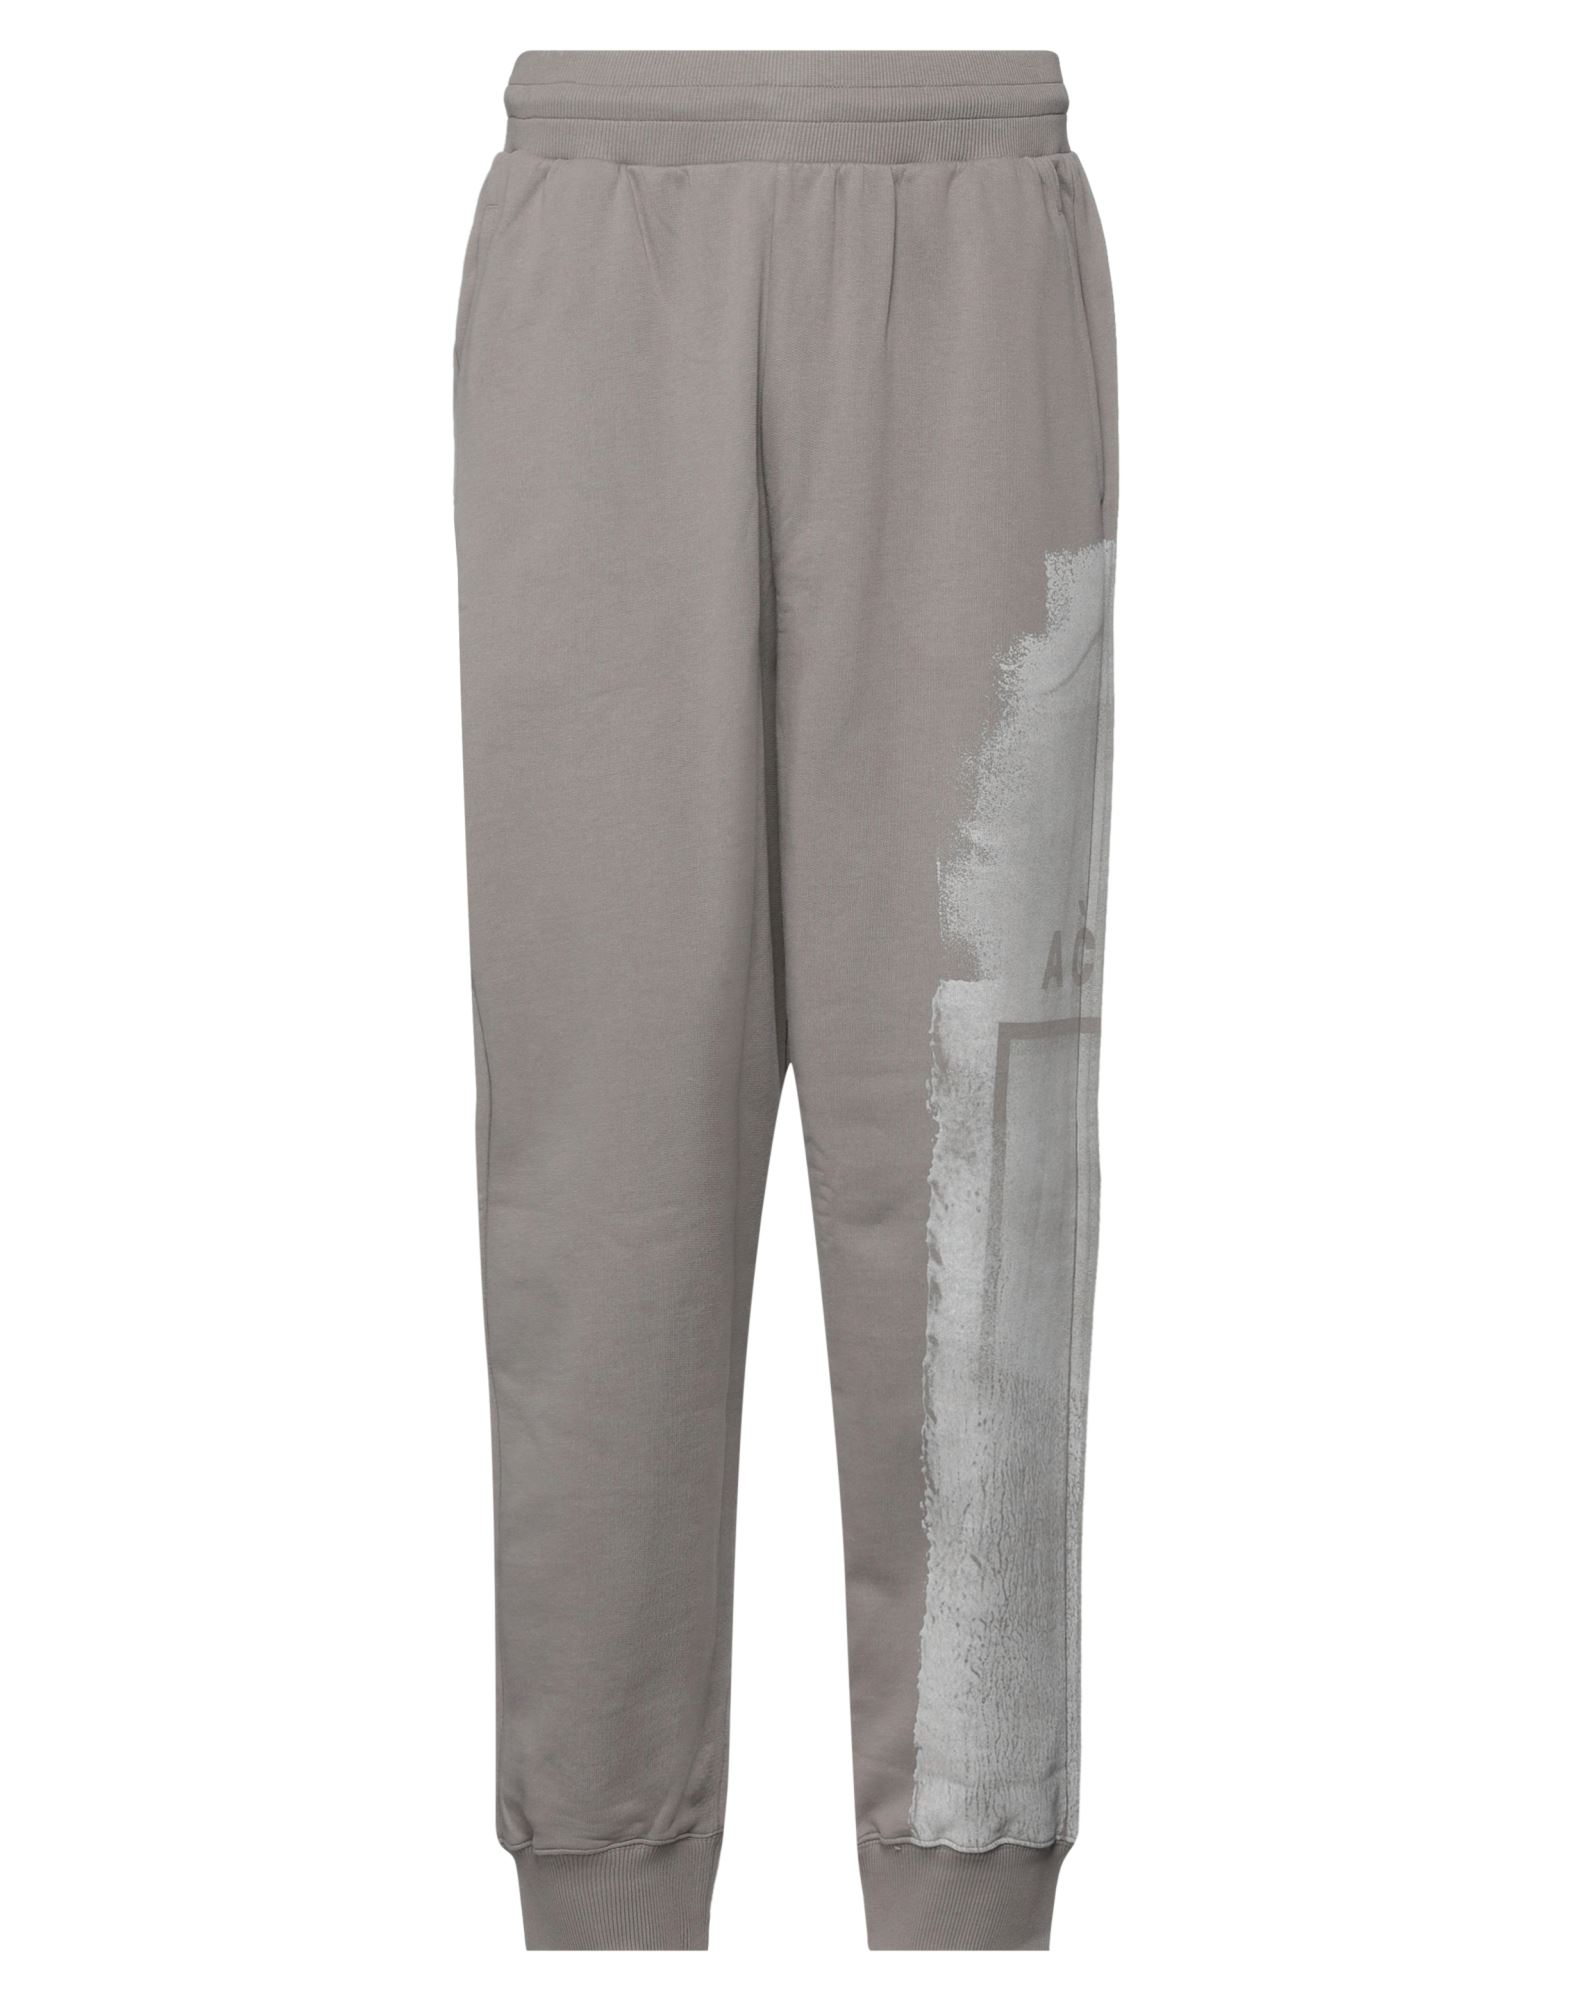 A-cold-wall* Man Pants Grey Size L Cotton, Elastane